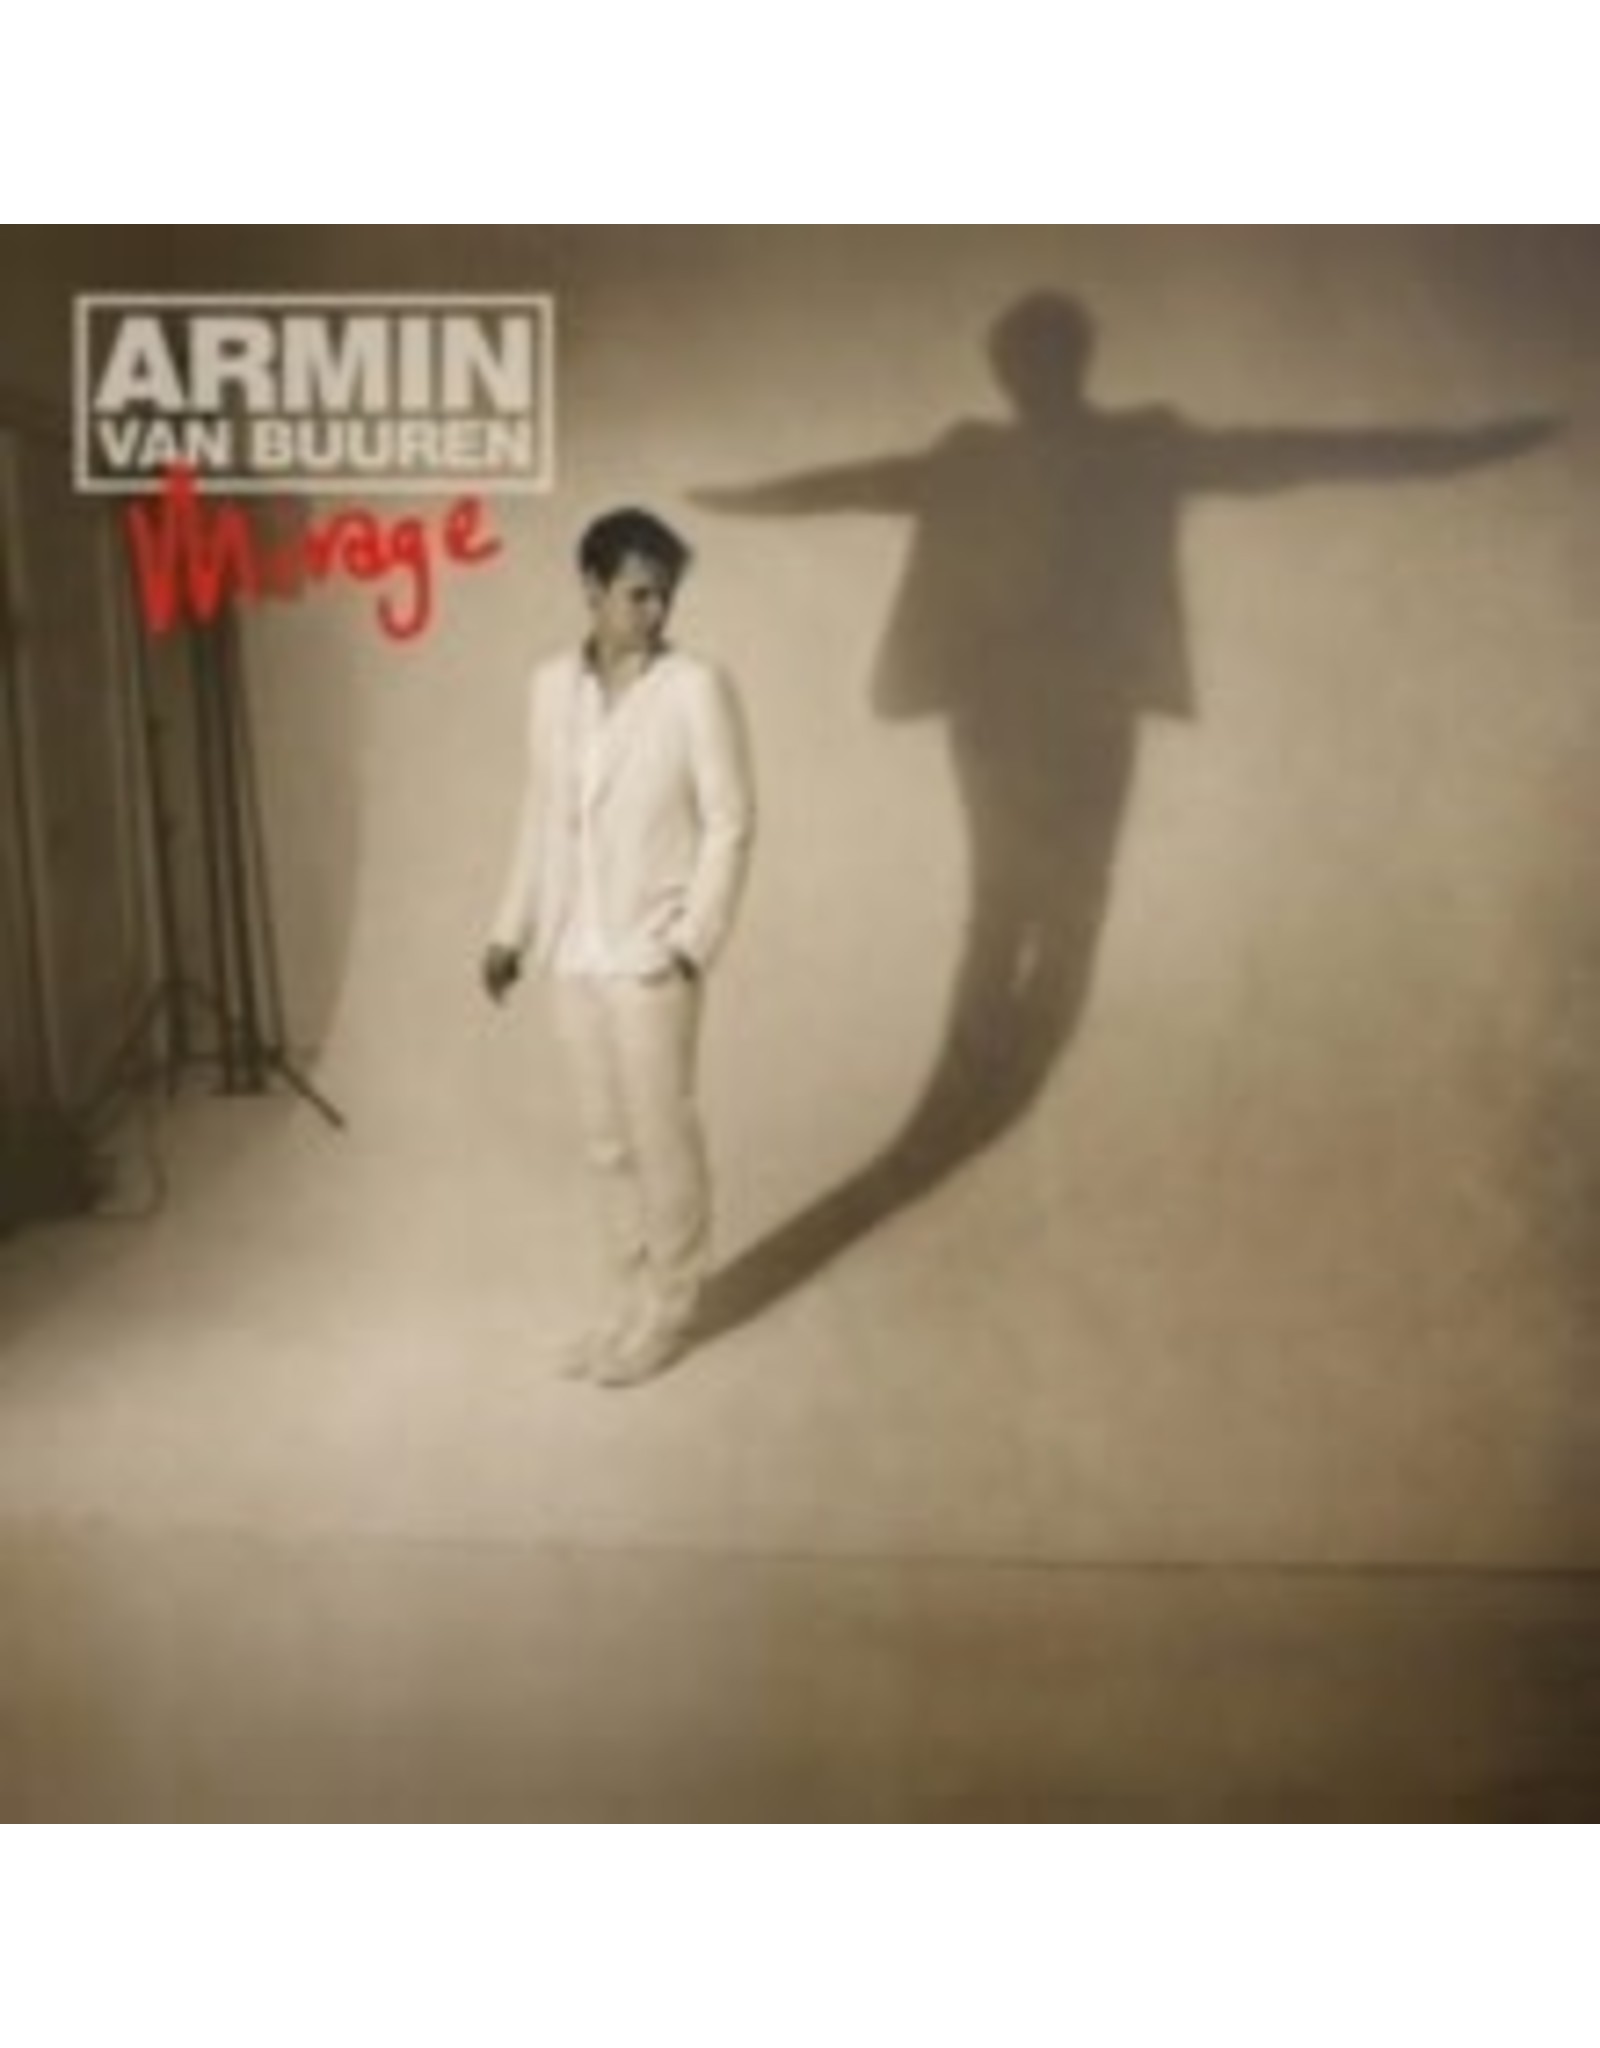 New Vinyl Armin van Buuren - Mirage 2LP